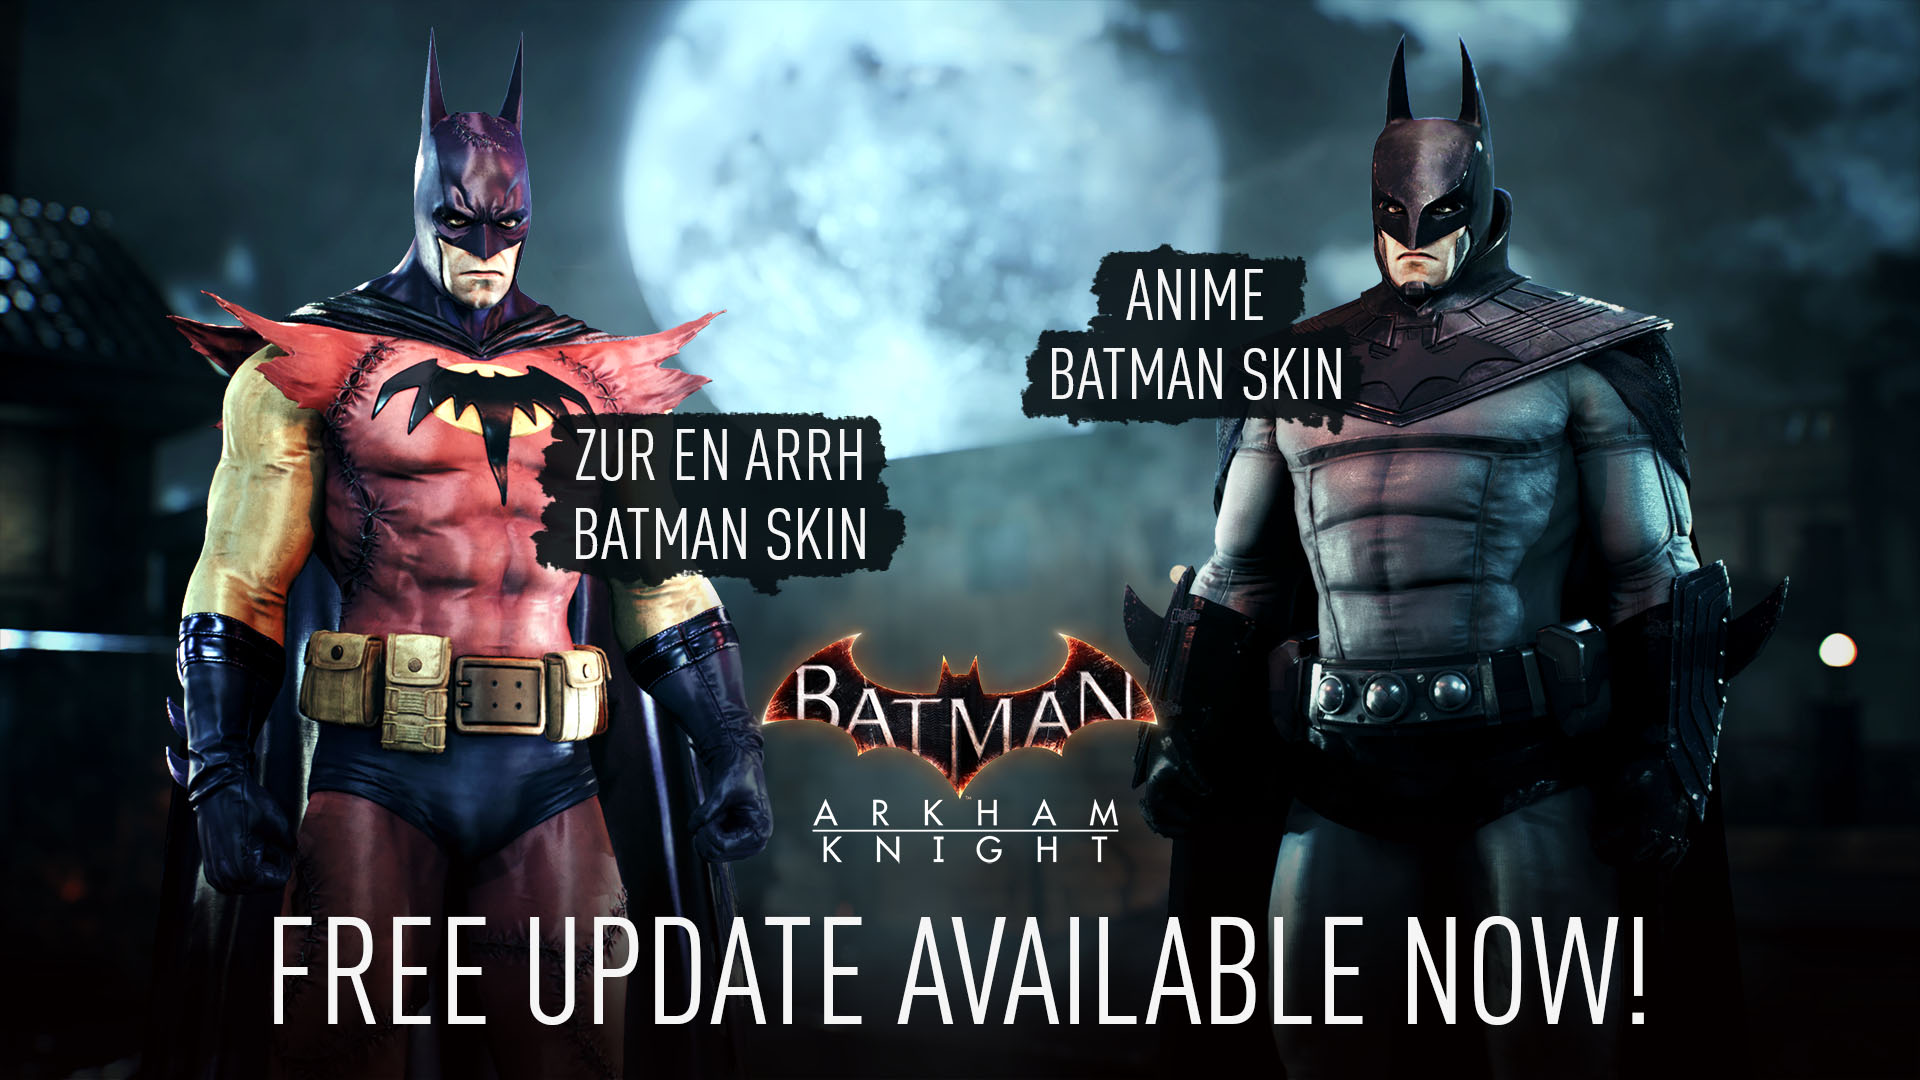 Batman Arkham Knight elimina Denuvo de Steam y agrega Dos Skins para todos  los usuarios con su Nueva Actualización | PC Master Race Latinoamérica